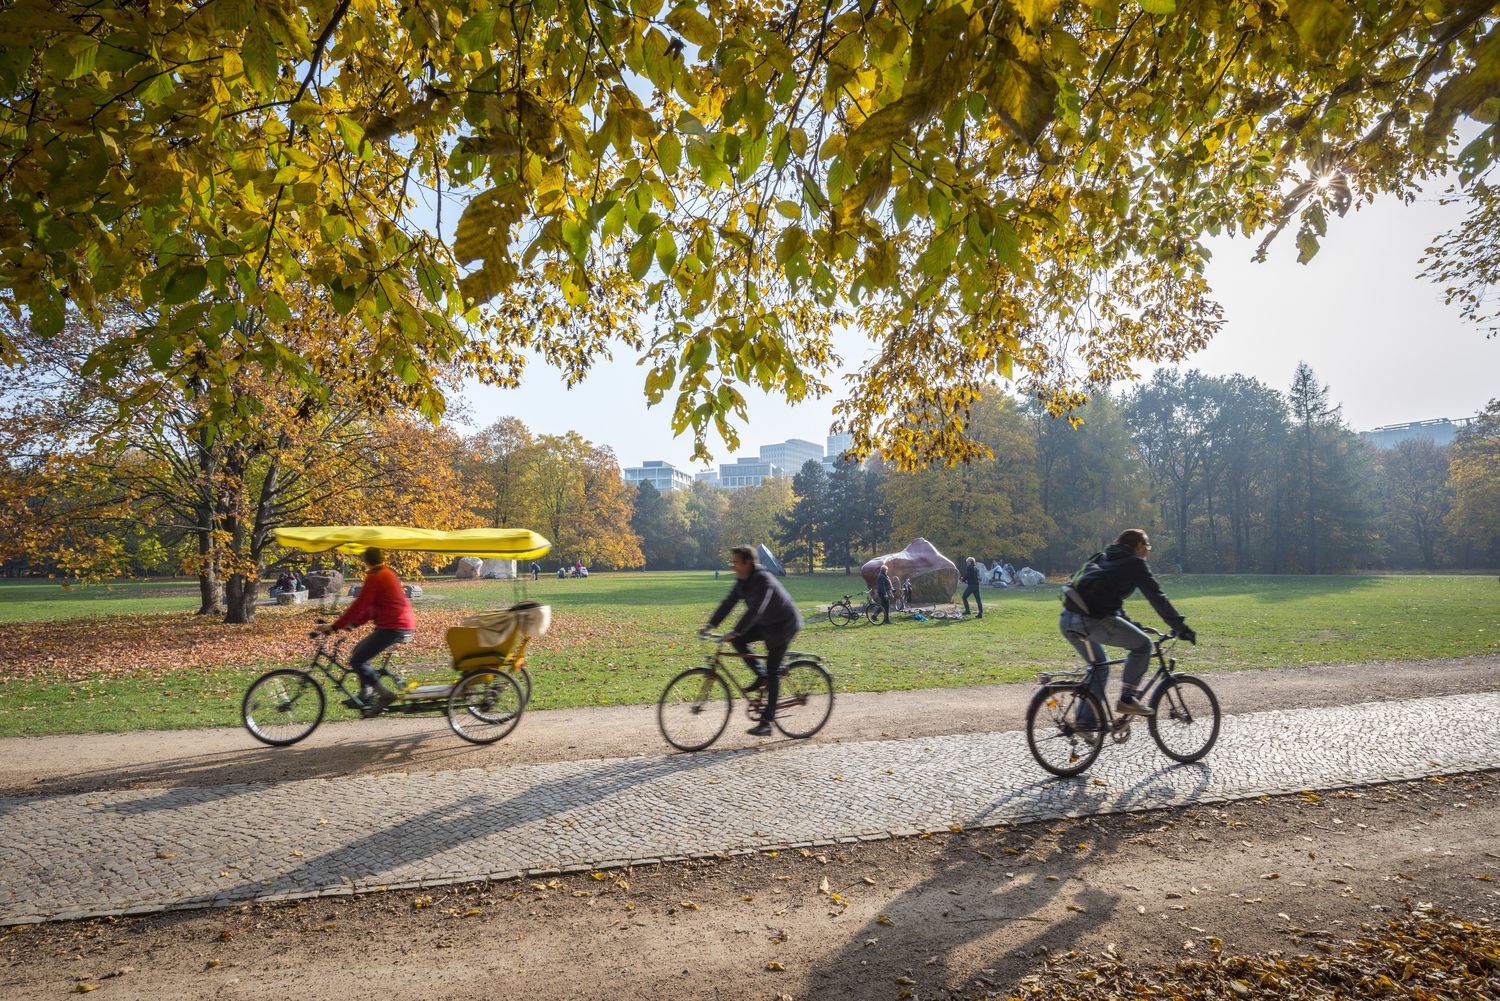 Radfahren im Herbst hat seine eigenen Reize und Herausforderungen.